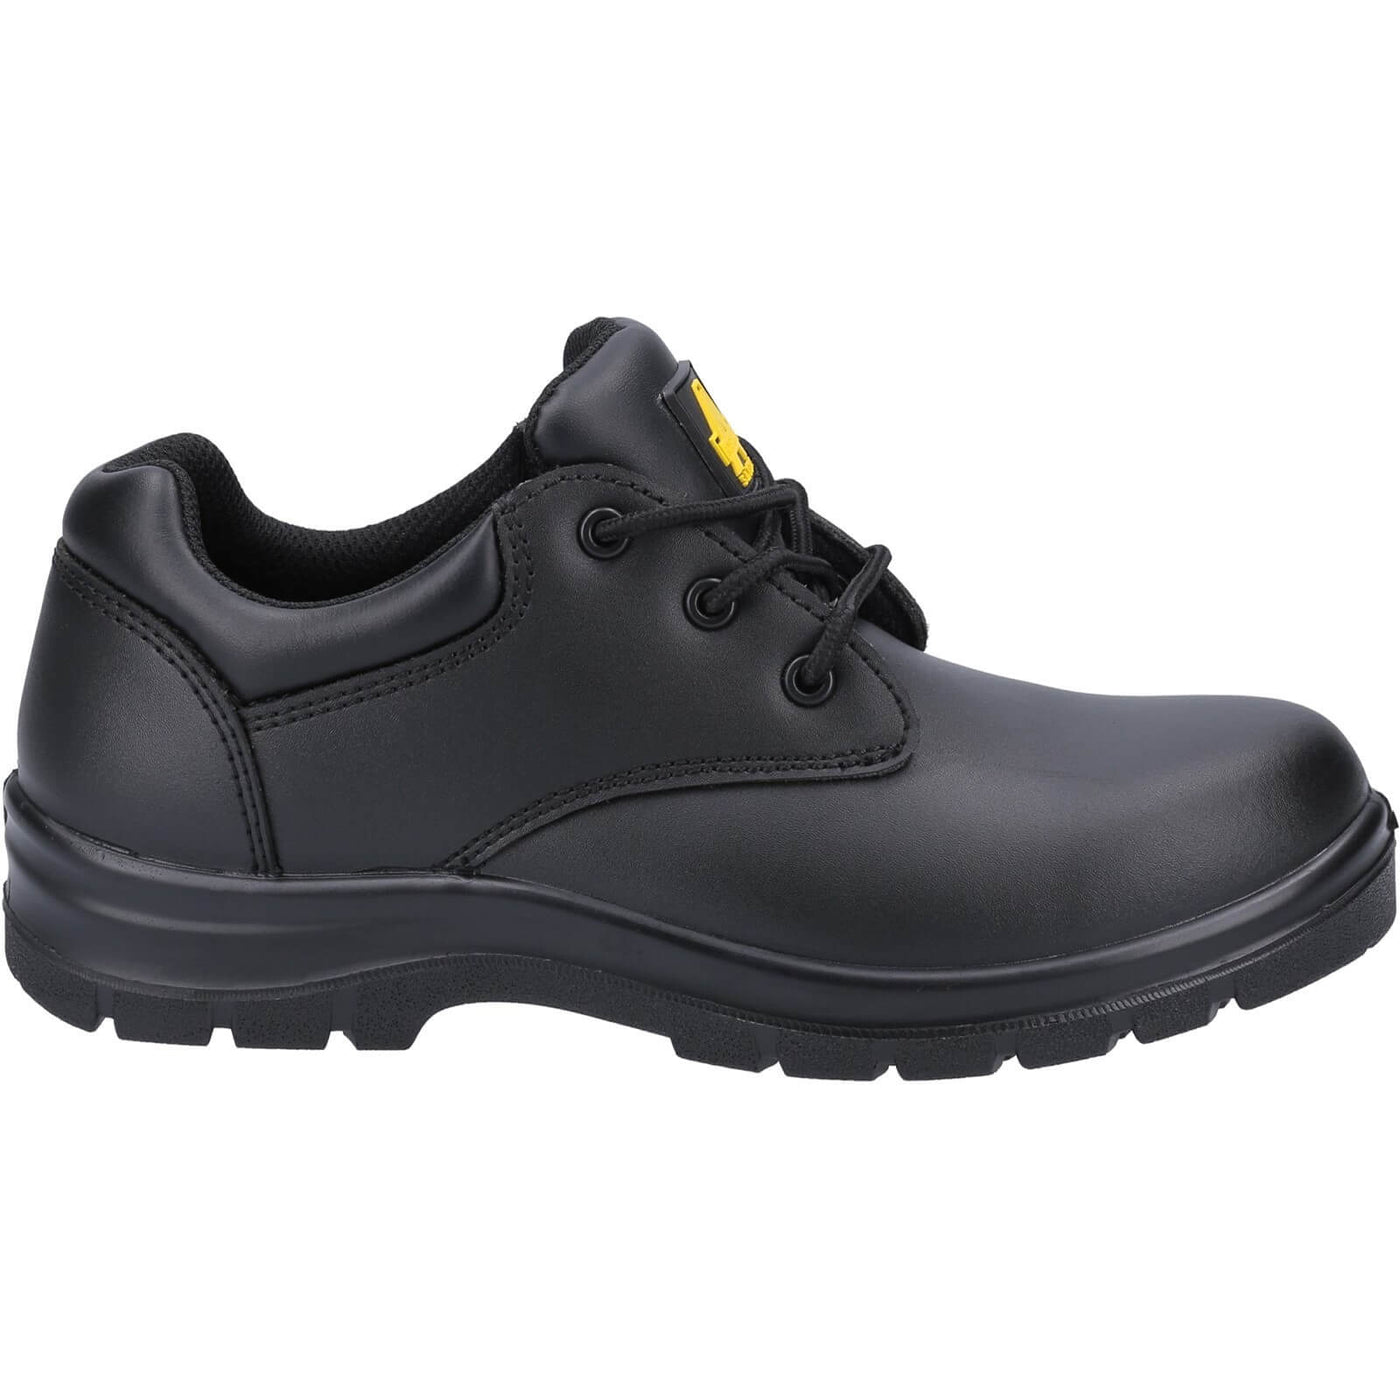 Amblers AS715C Safety Shoes Black 4#colour_black